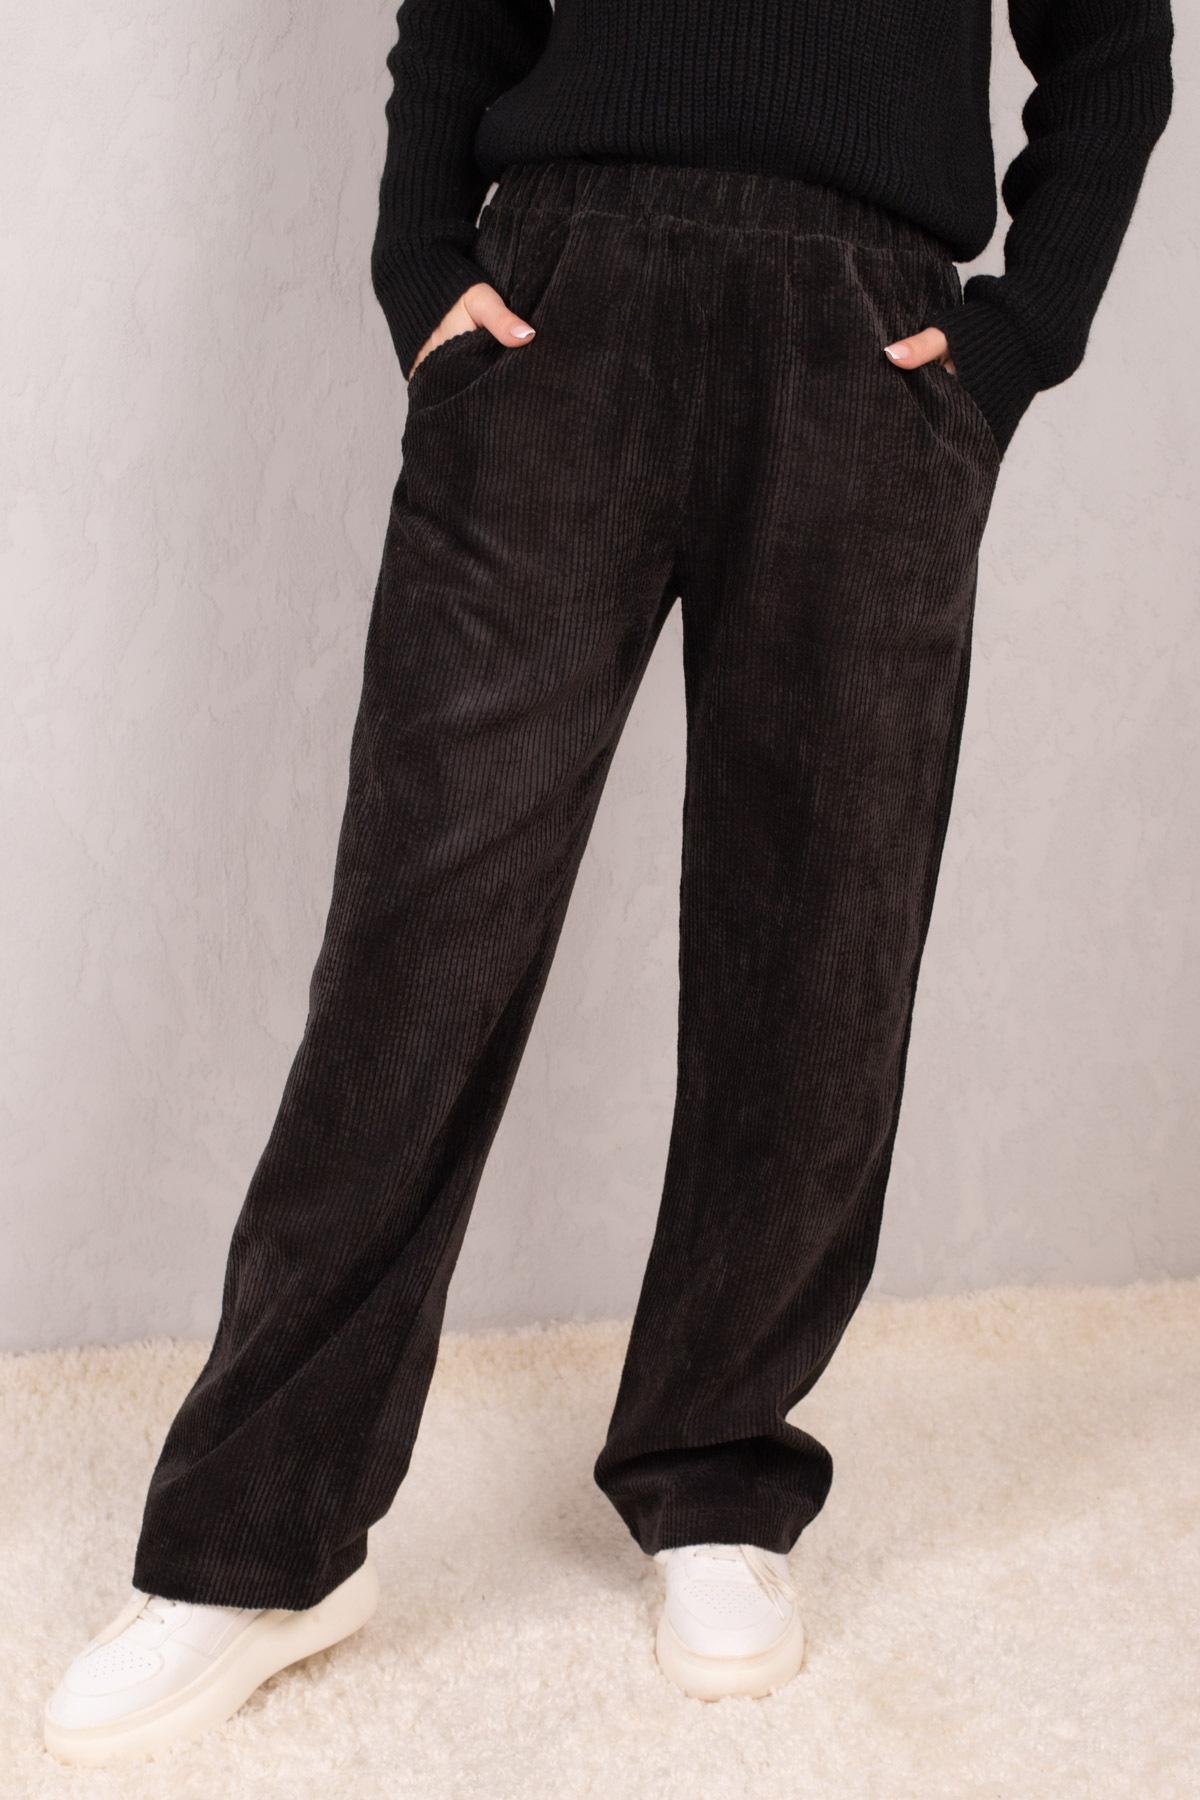 armonika Women's Black Elastic Waist Pocket Wide Leg Velvet Trousers